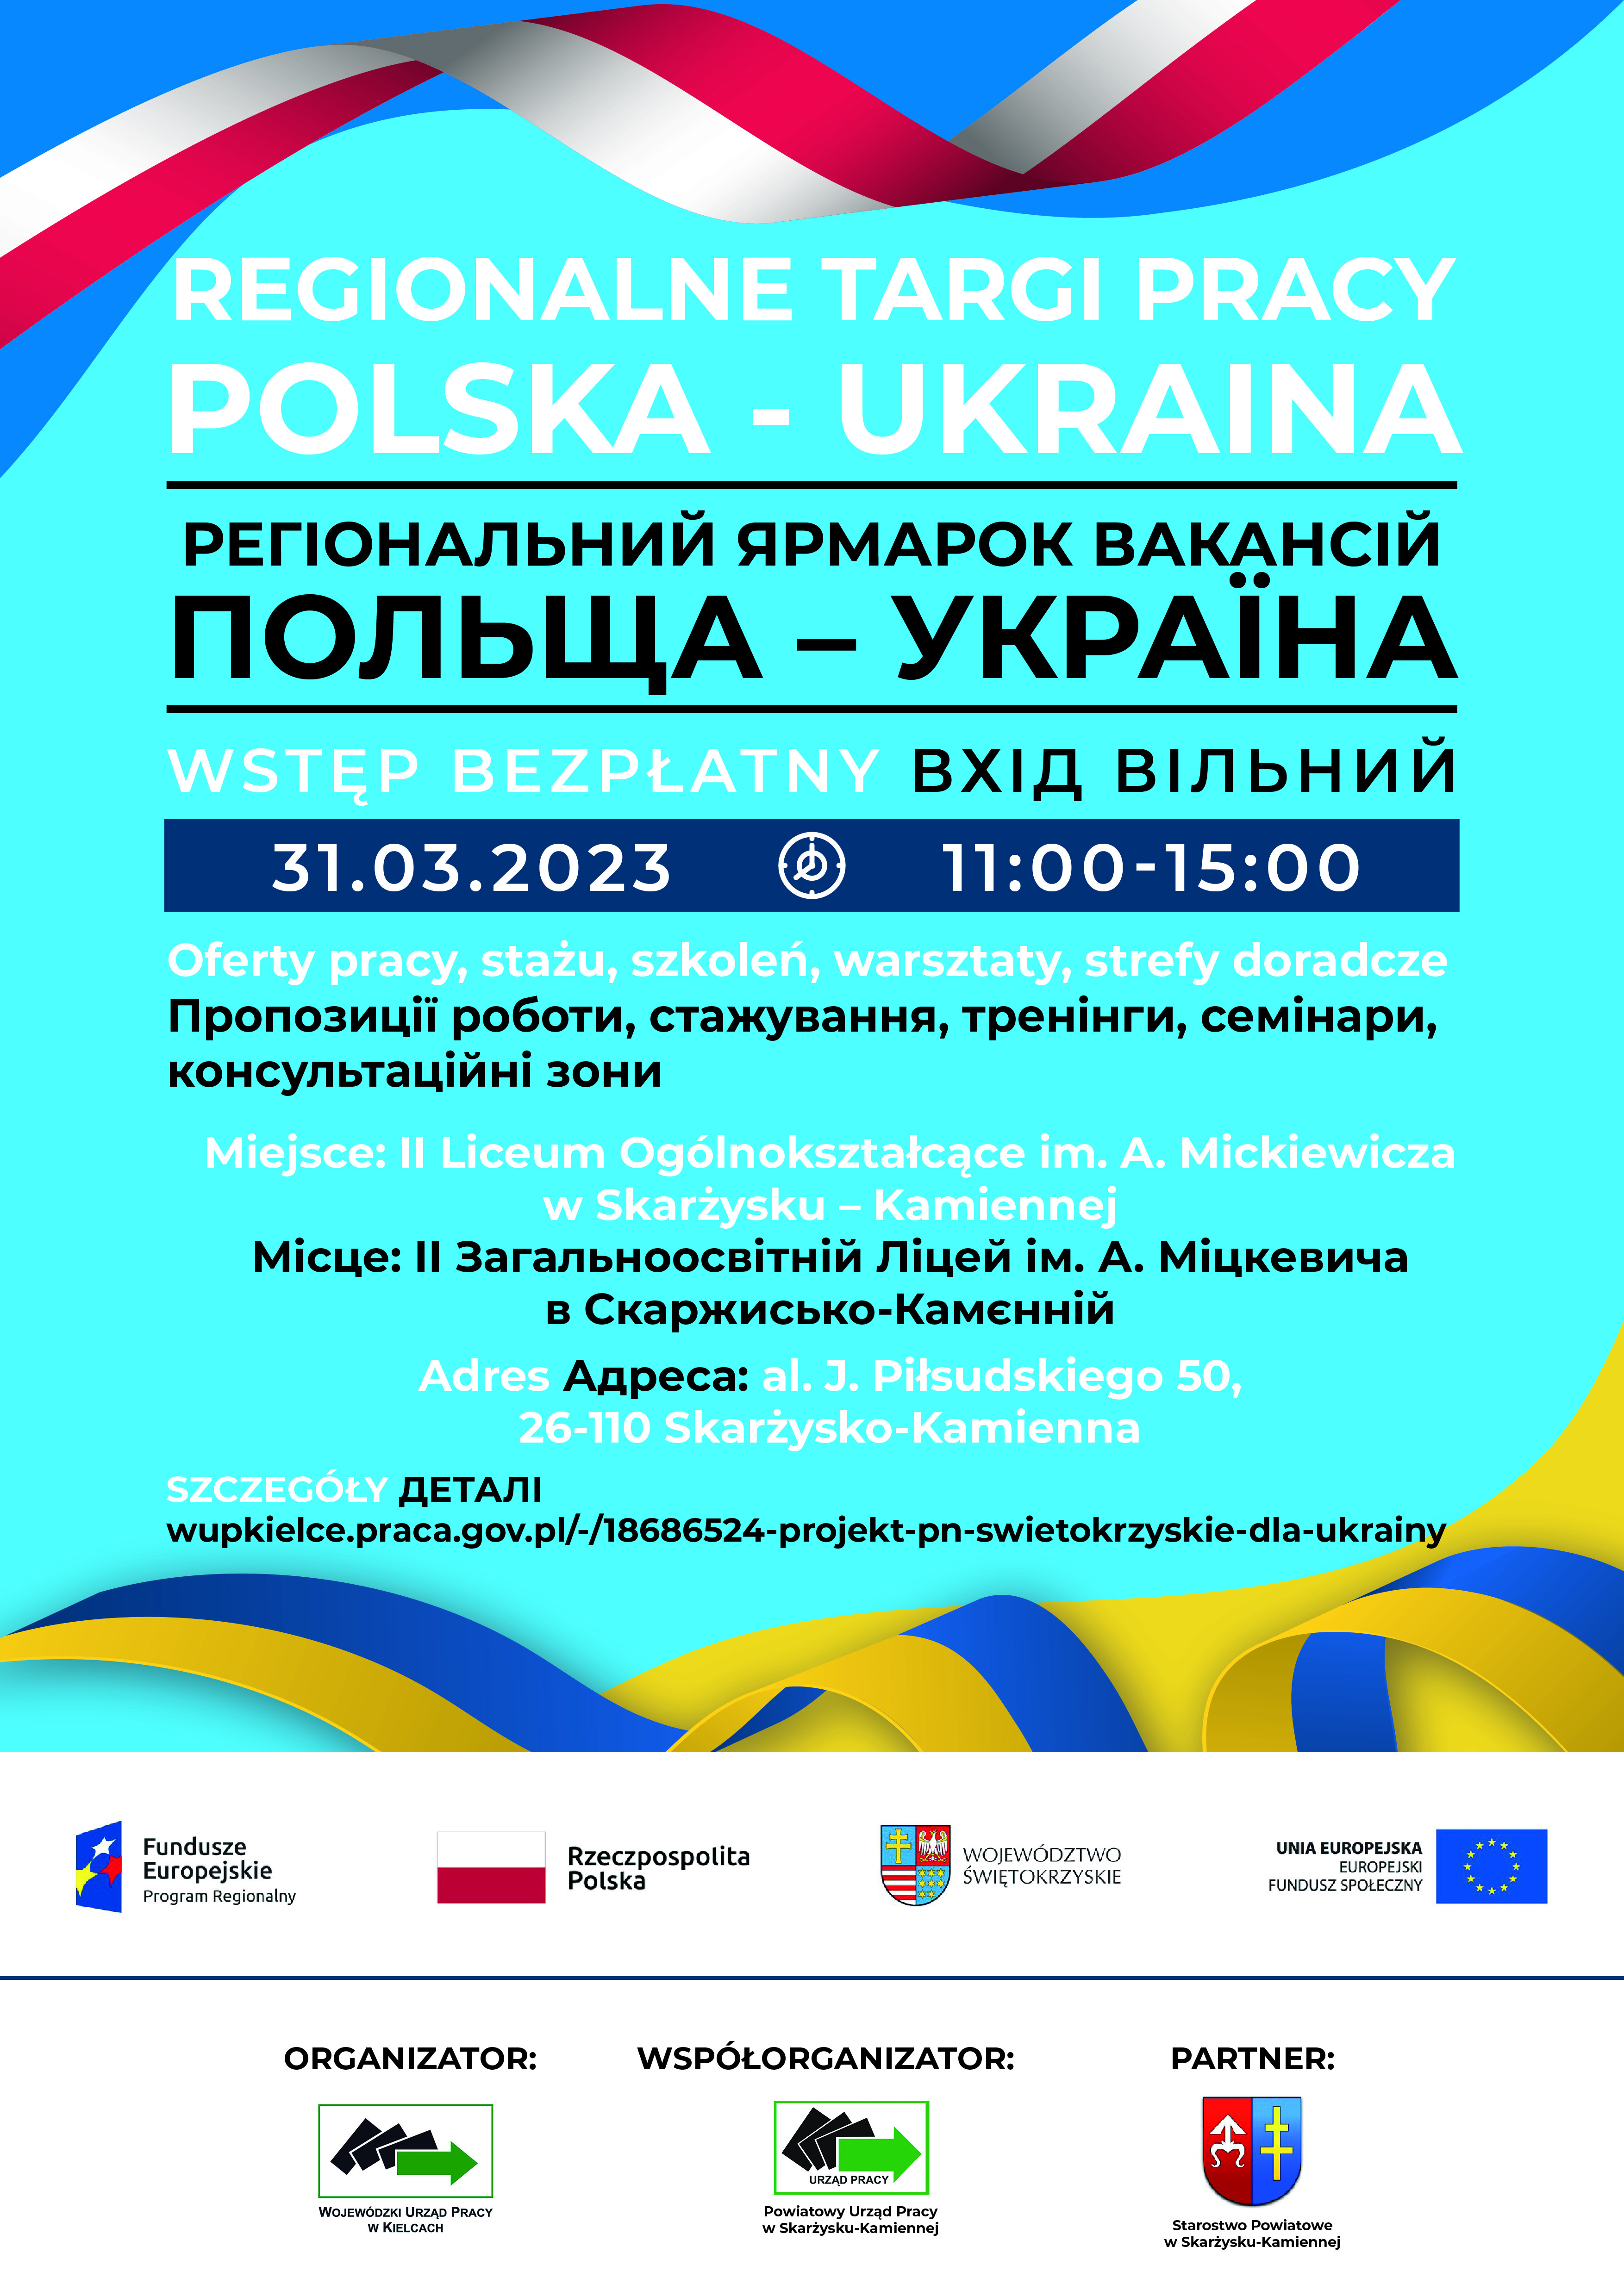 WUP Regionalne Targi Pracy POLSKA UKRAINA Plakat A3 Skarzysko 2023 v2